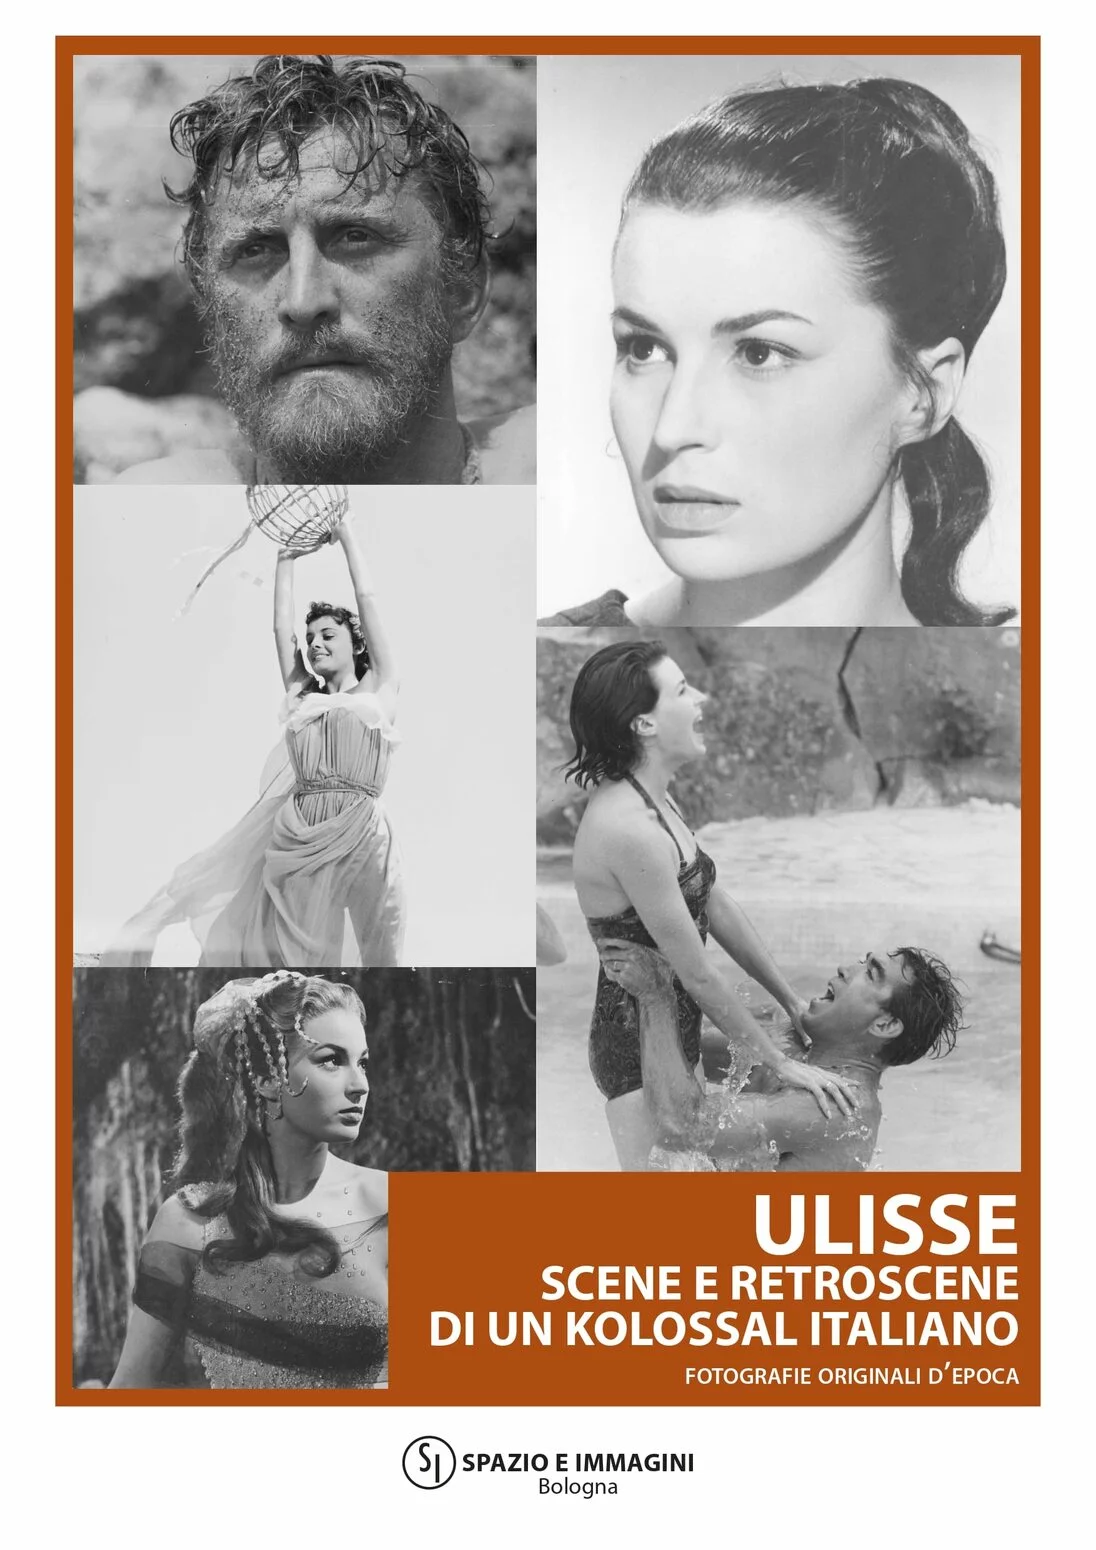 ULISSE - Scene e retroscene di un kolossal italiano